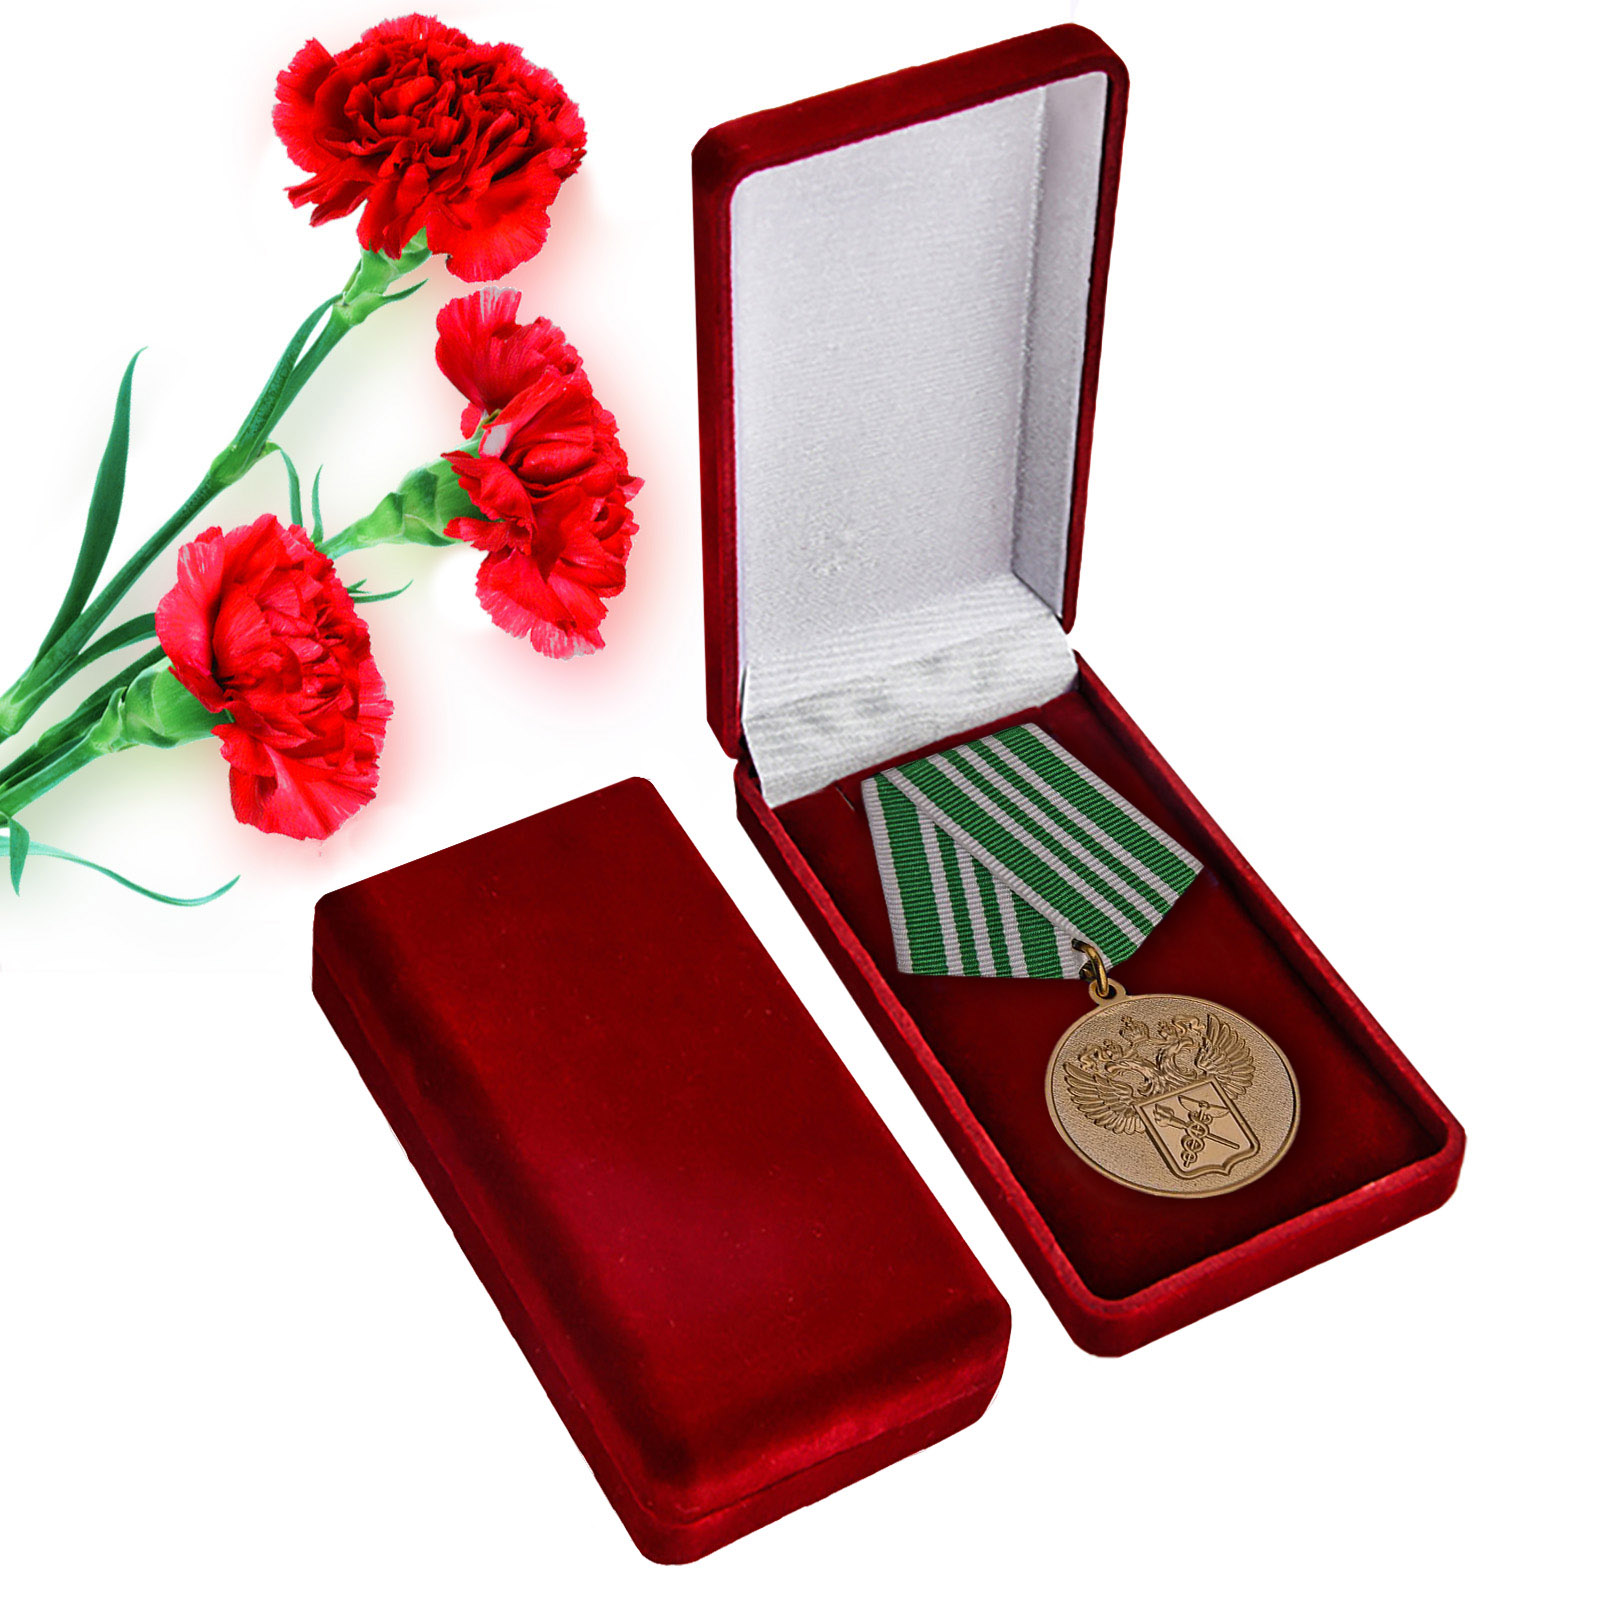 Купить ведомственную медаль "За службу в таможенных органах" 3 степени с доставкой